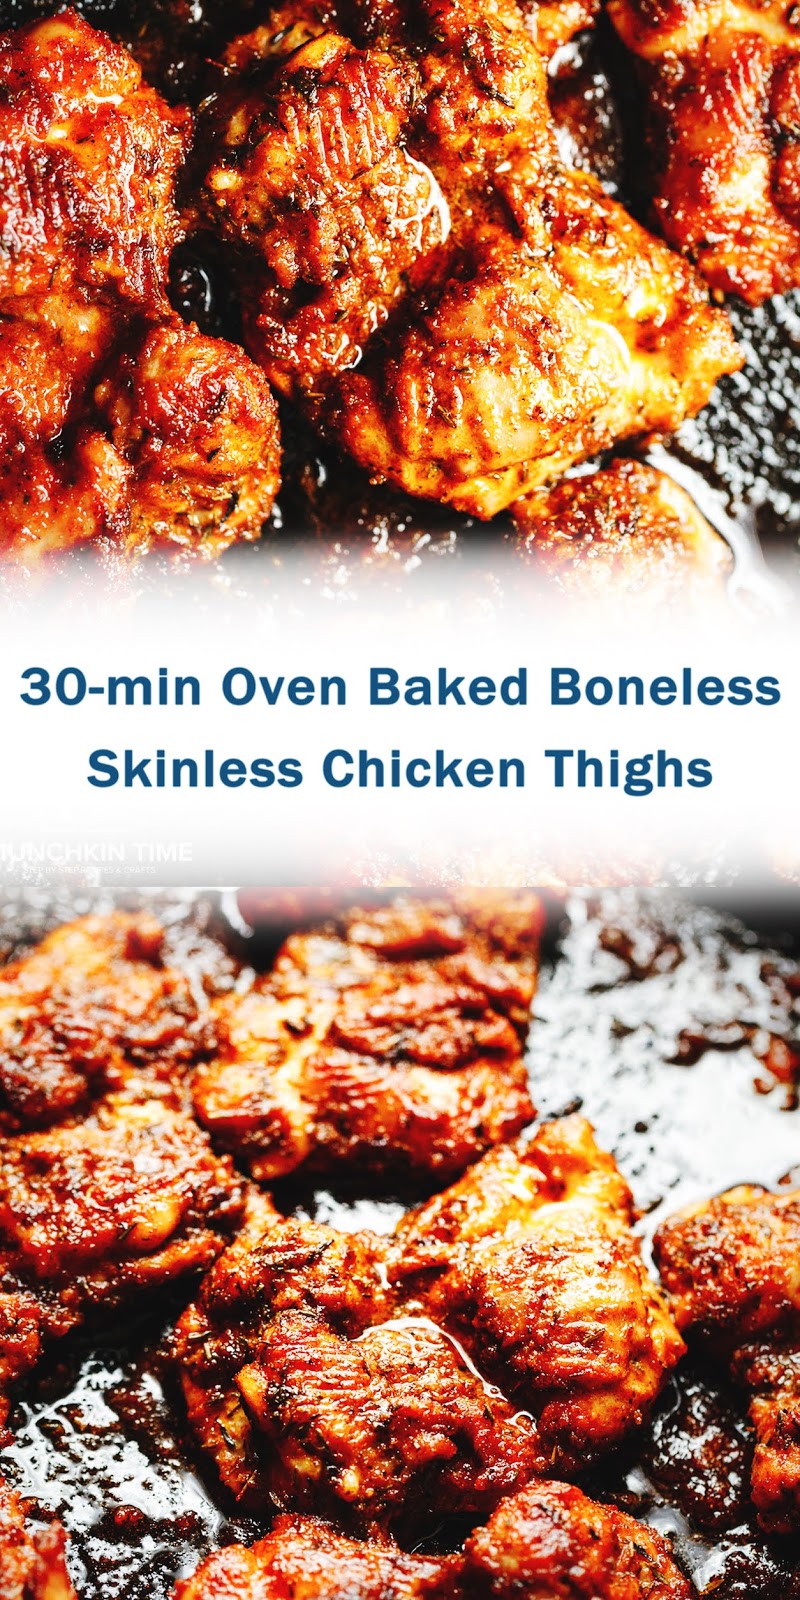 30-min Oven Baked Boneless Skinless Chicken Thighs